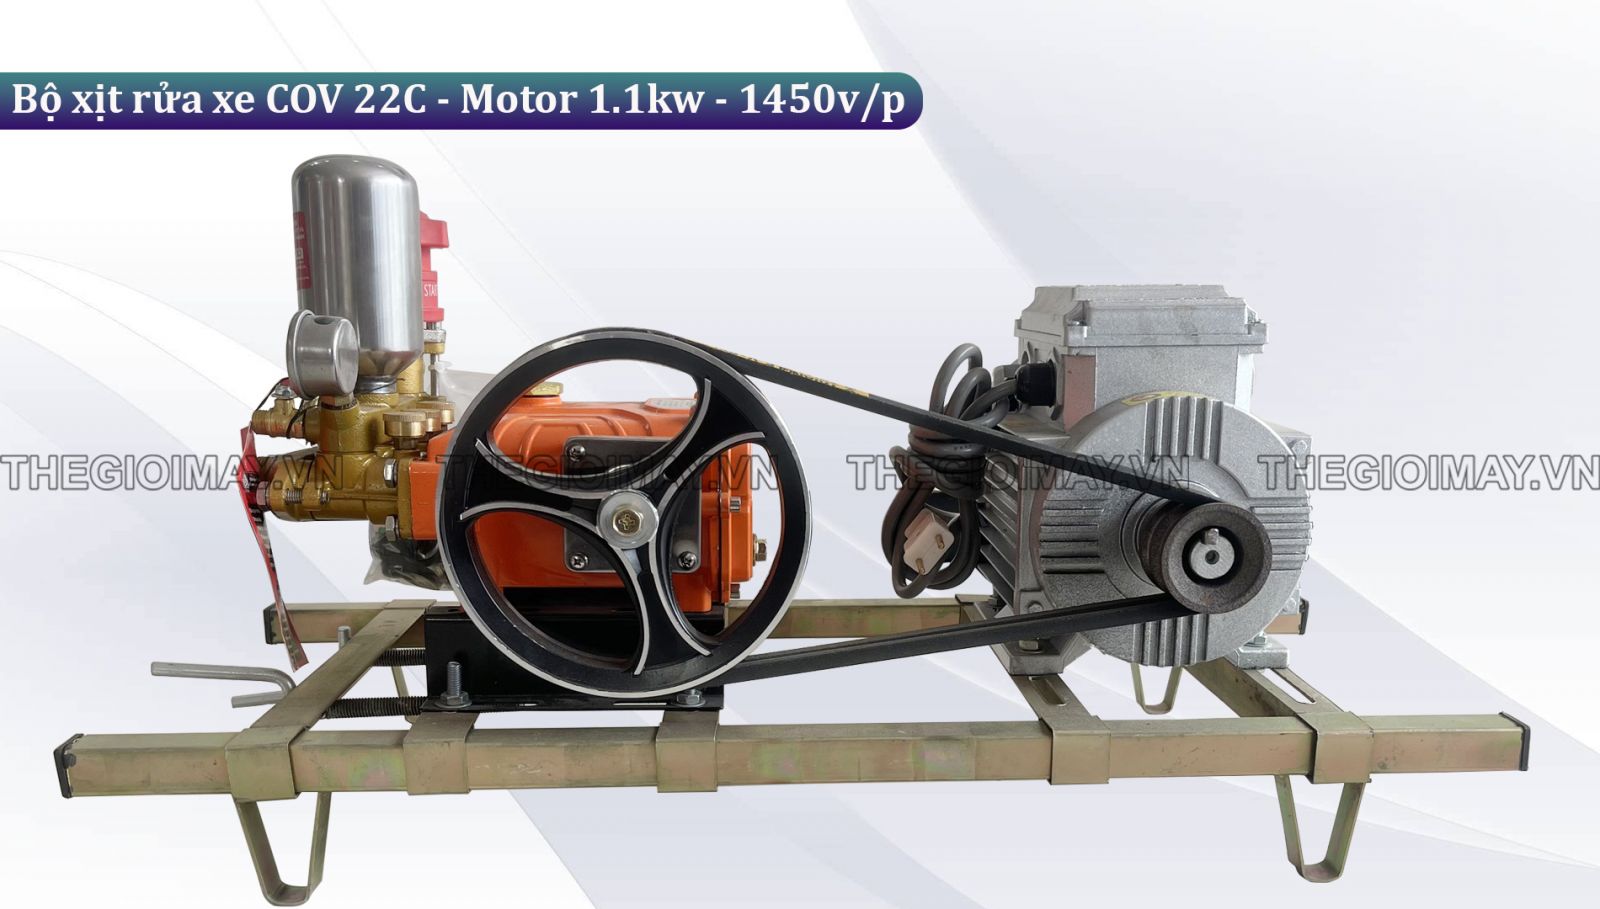 Ứng dụng của bộ xịt rửa xe dây đai COV 22c - Motor 1.1kw-1450v/p